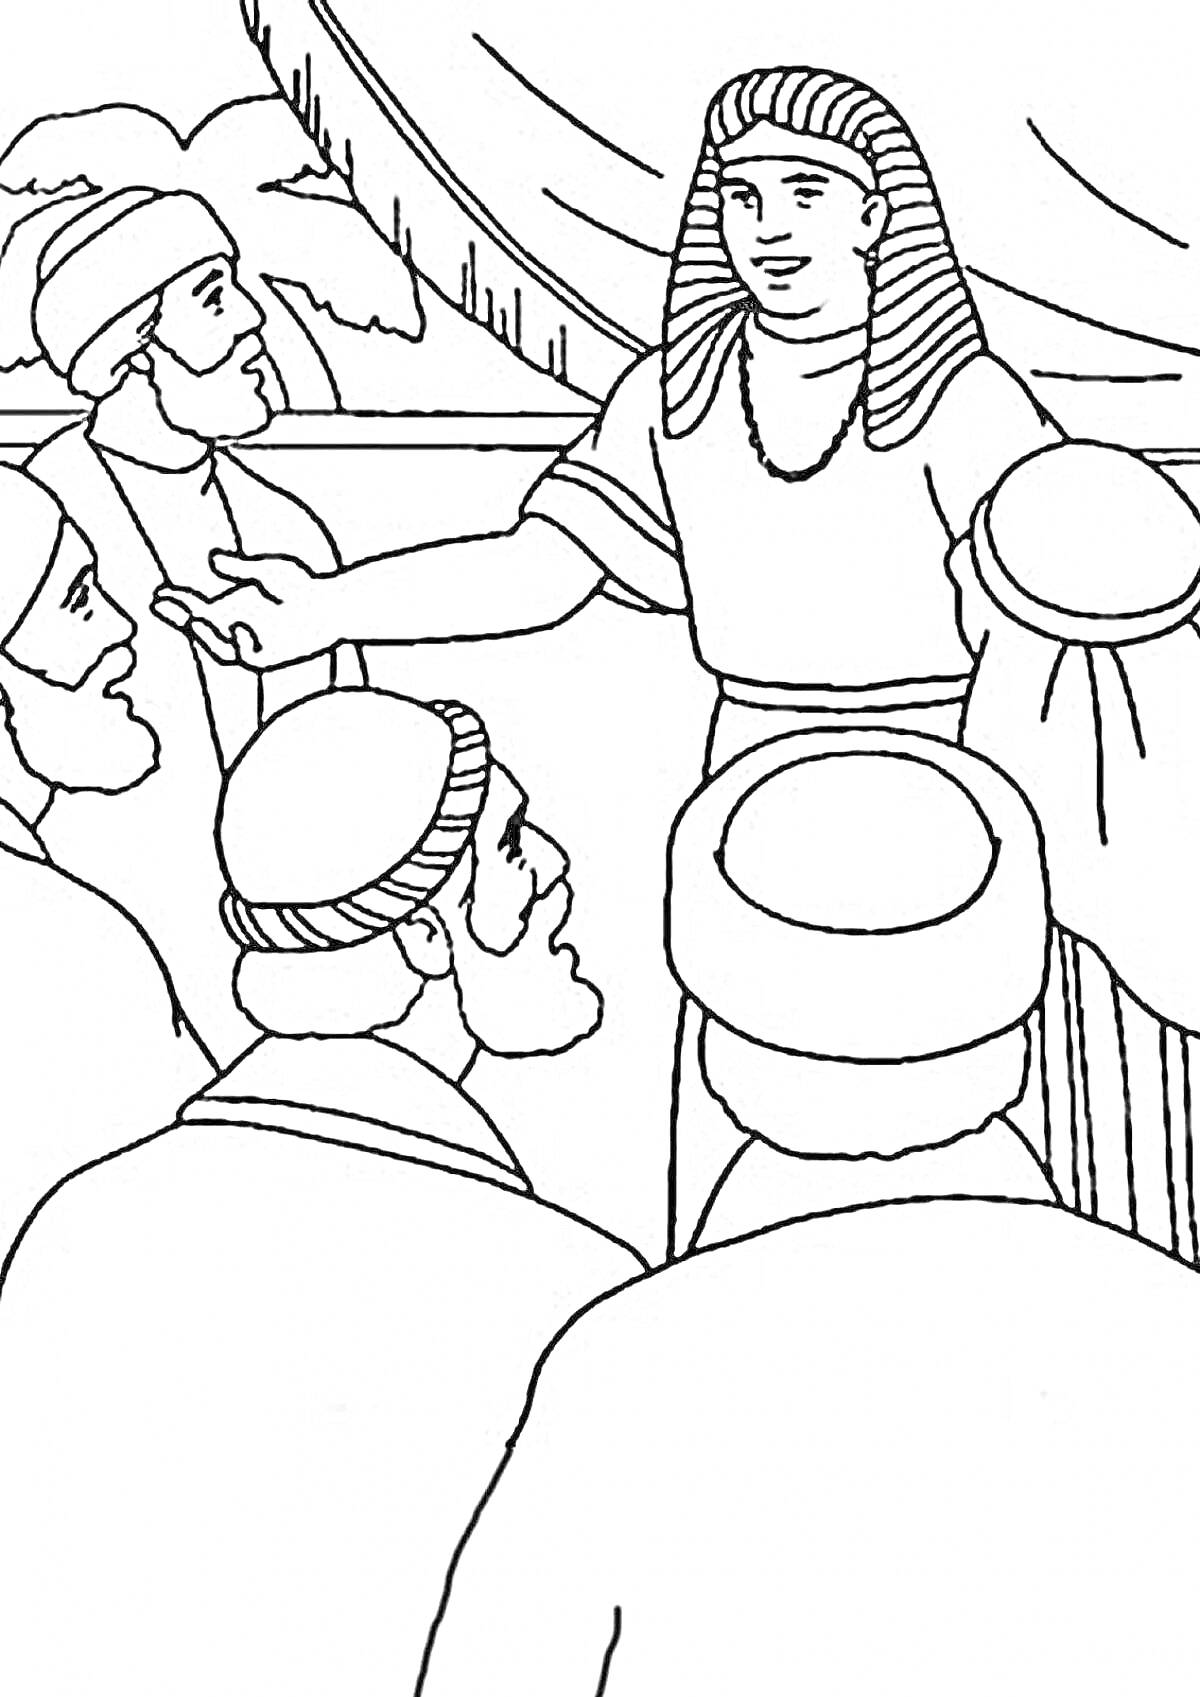 Иосиф общается с братьями, Иосиф в египетском головном уборе, братья в шапках на фоне палатки.